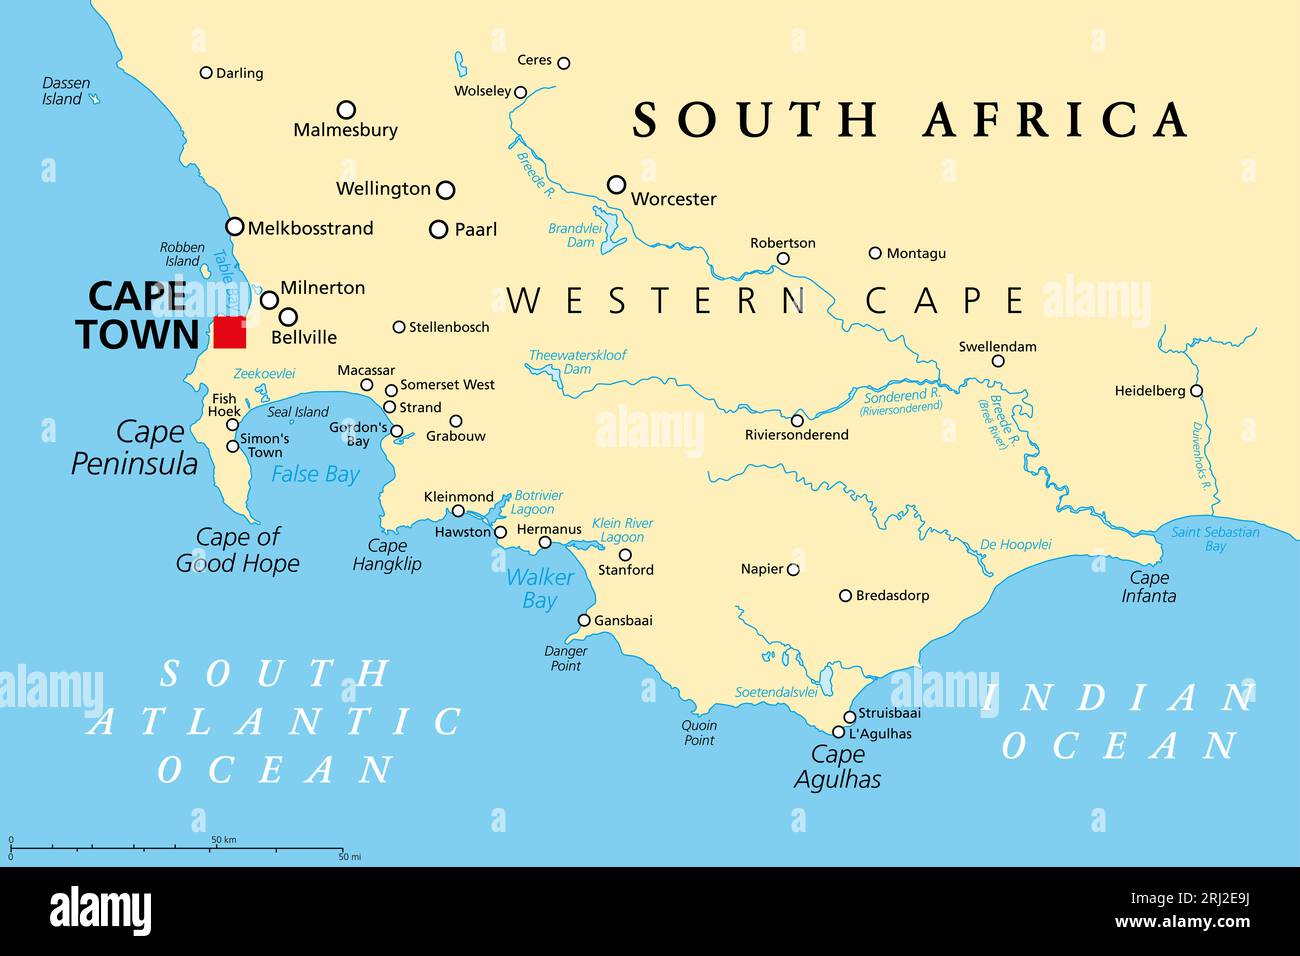 Kap der Guten Hoffnung, eine Region in Südafrika, politische Landkarte. Von Kapstadt und Kap-Halbinsel, einer Landzunge an der Südatlantikküste, bis Cape Agulhas. Stockfoto